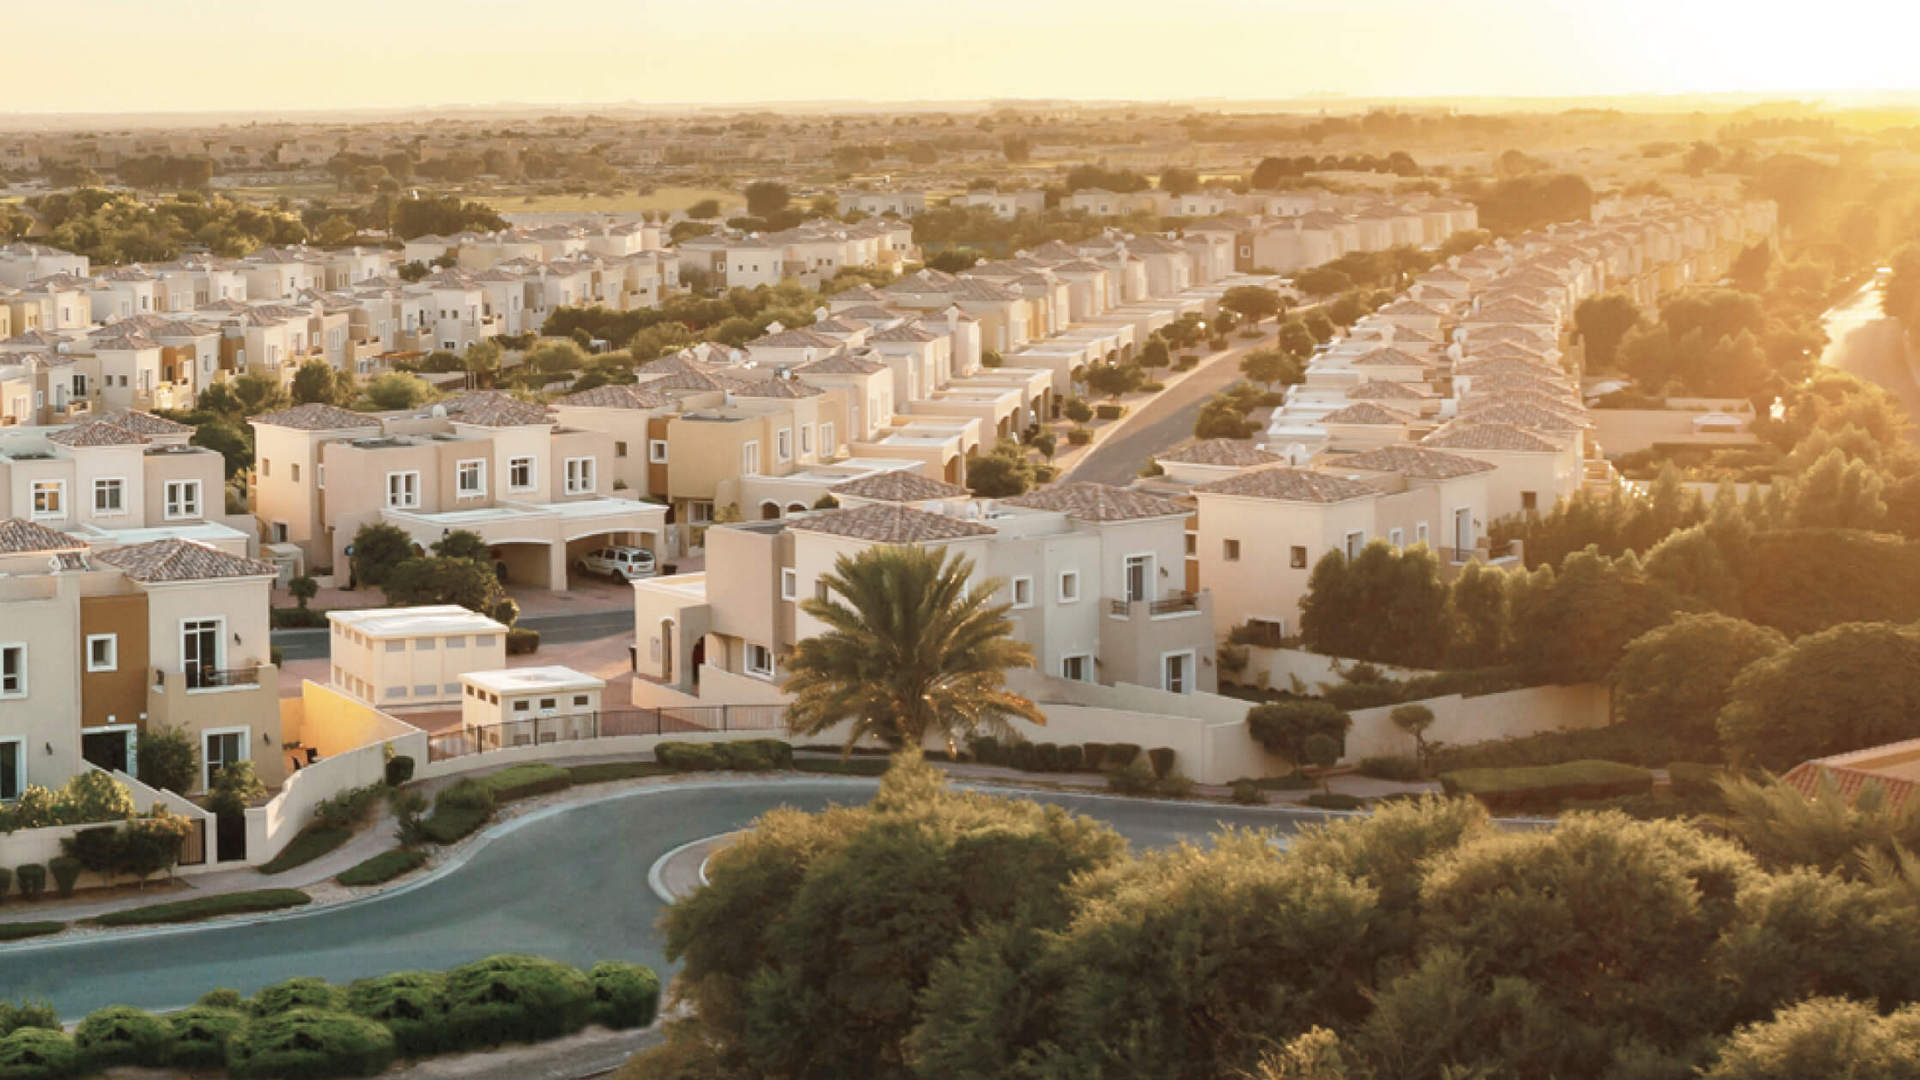 ANYA 2 TOWNHOUSES by Emaar Properties in Arabian Ranches 3, Dubai, UAE - 9